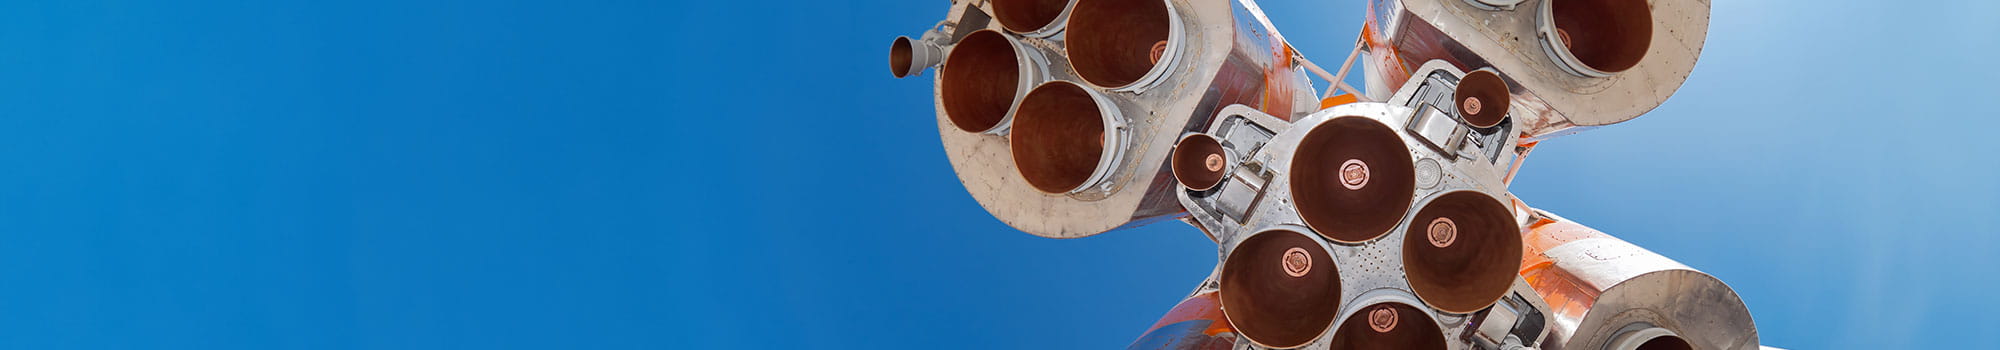 Details einer Weltraumrakete, Triebwerk vor blauen Himmel